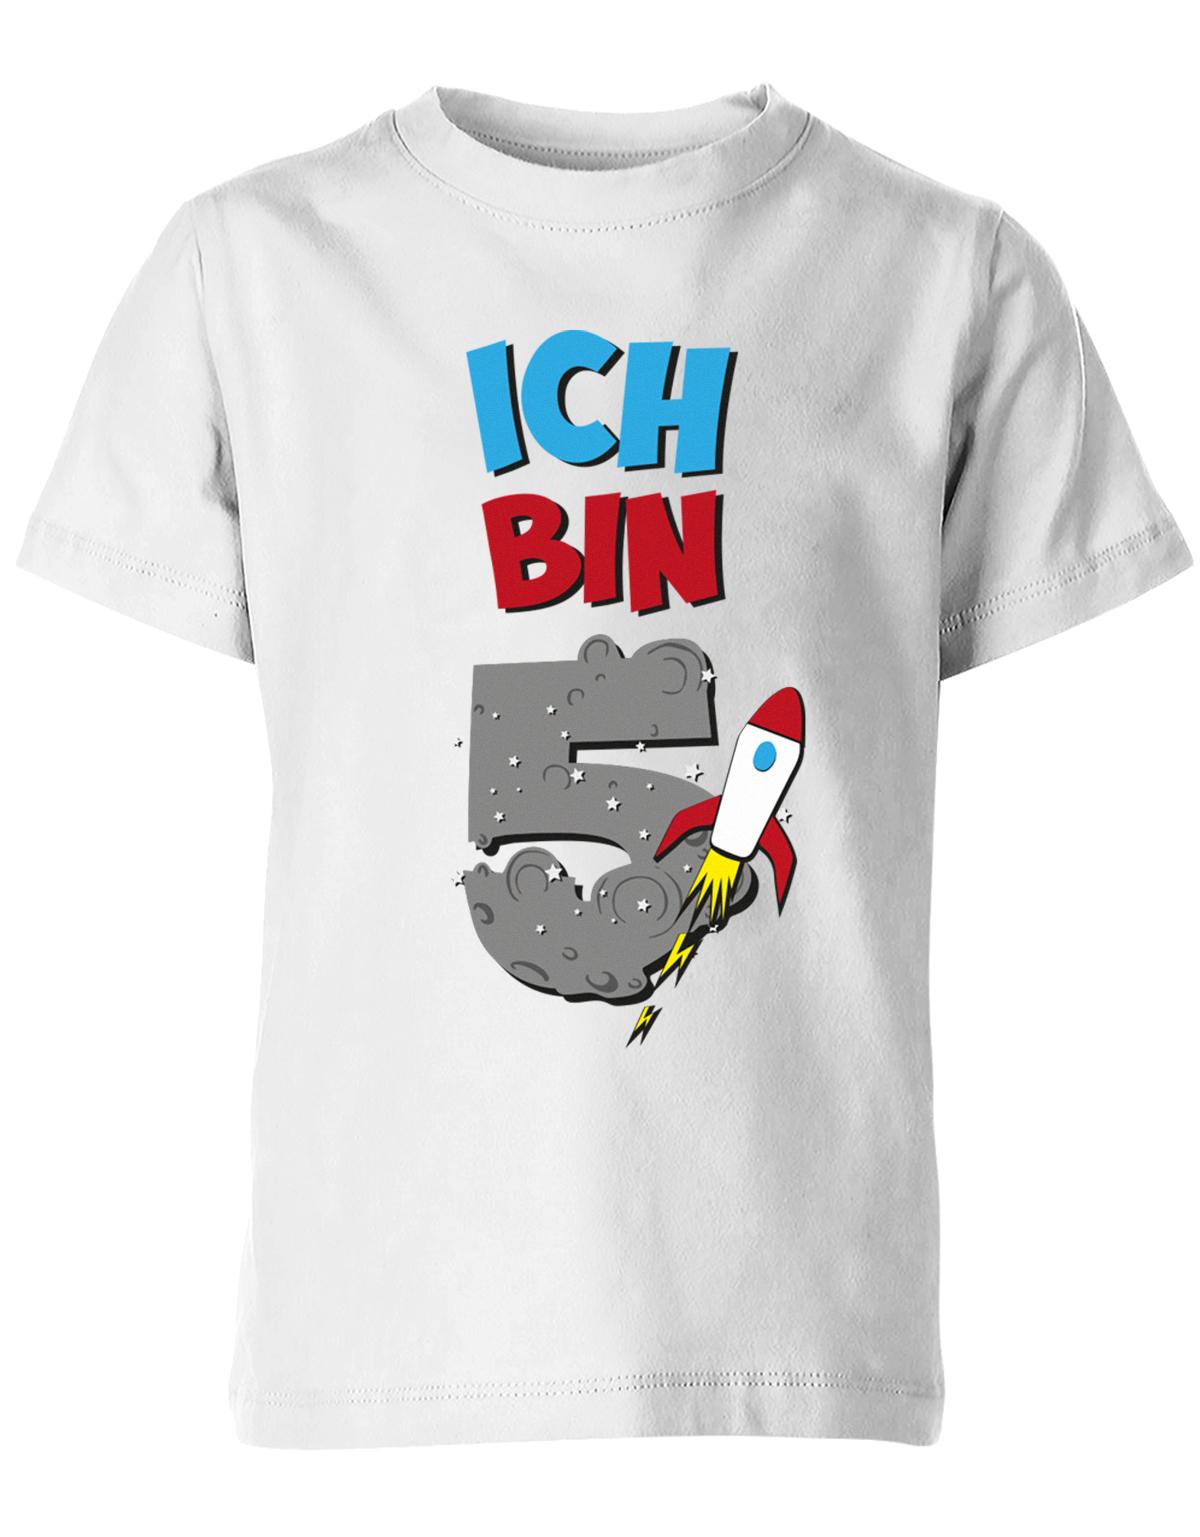 ich-bin-5-weltraum-rakete-planet-geburtstag-kinder-shirt-weiss